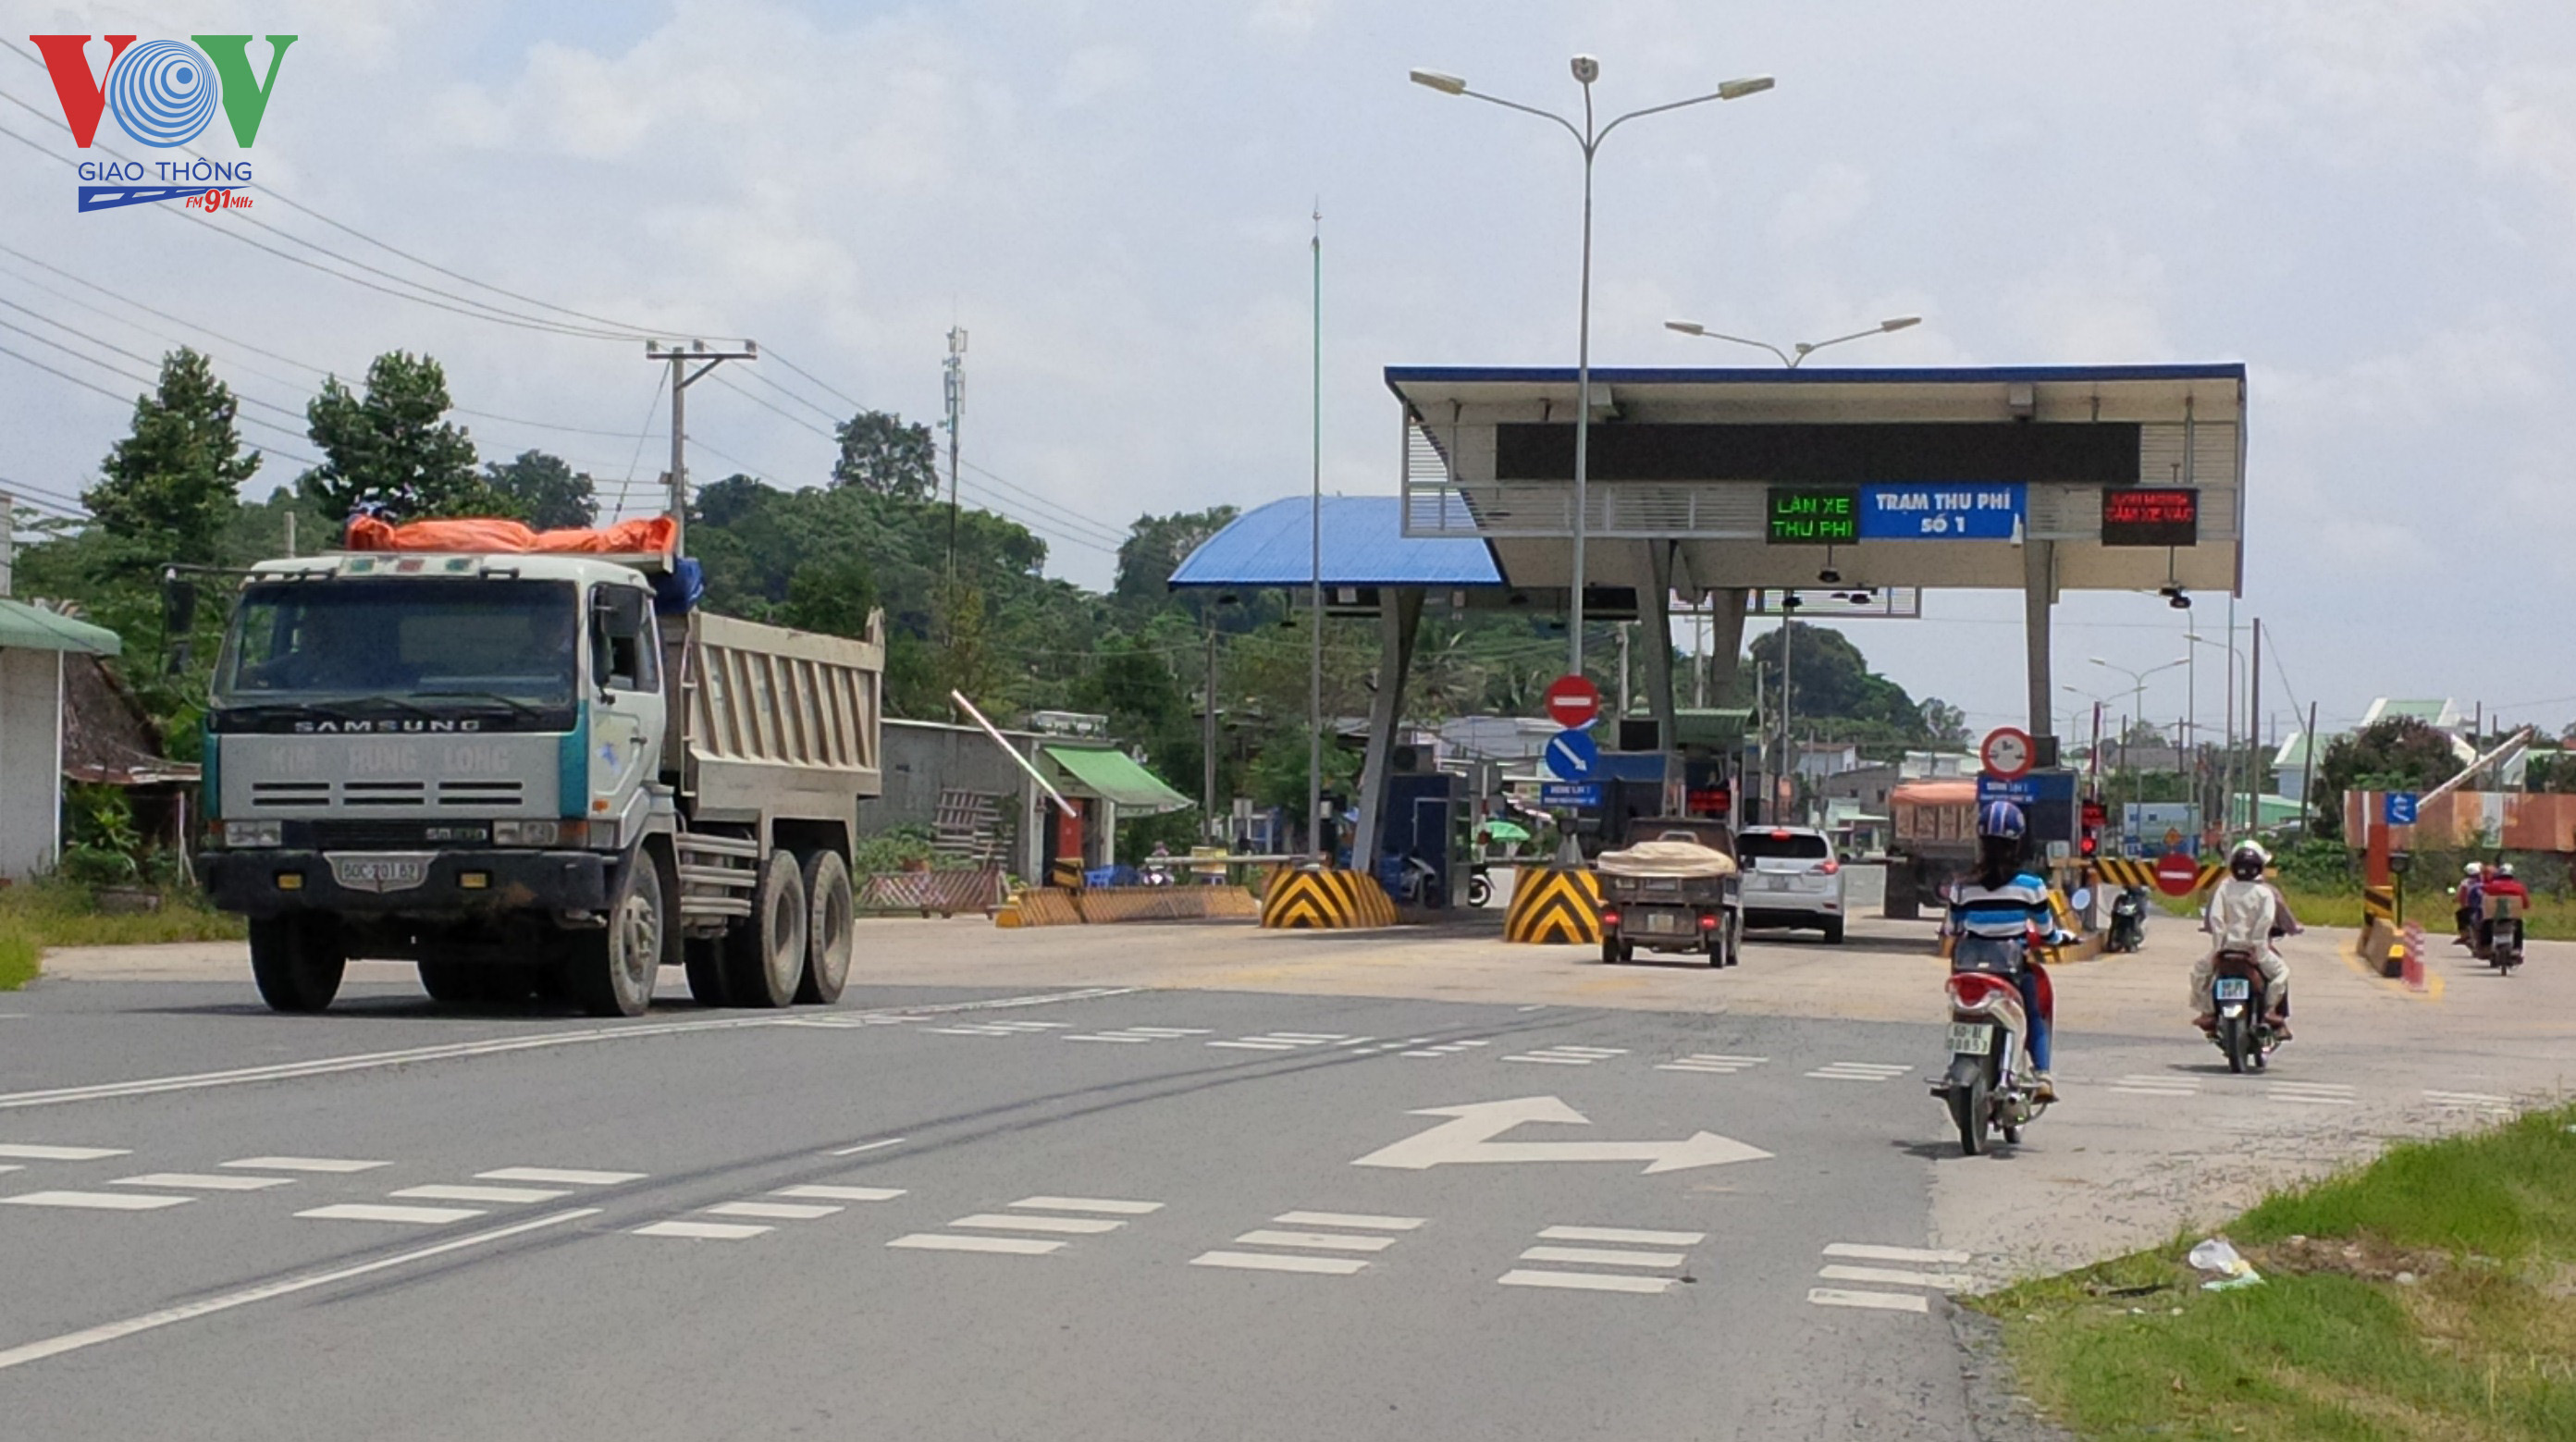 UBND tỉnh Đồng Nai chấp thuận cho miễn thu phí BOT đường 768 trong 4 ngày nghỉ tết Nguyên Đán 2020